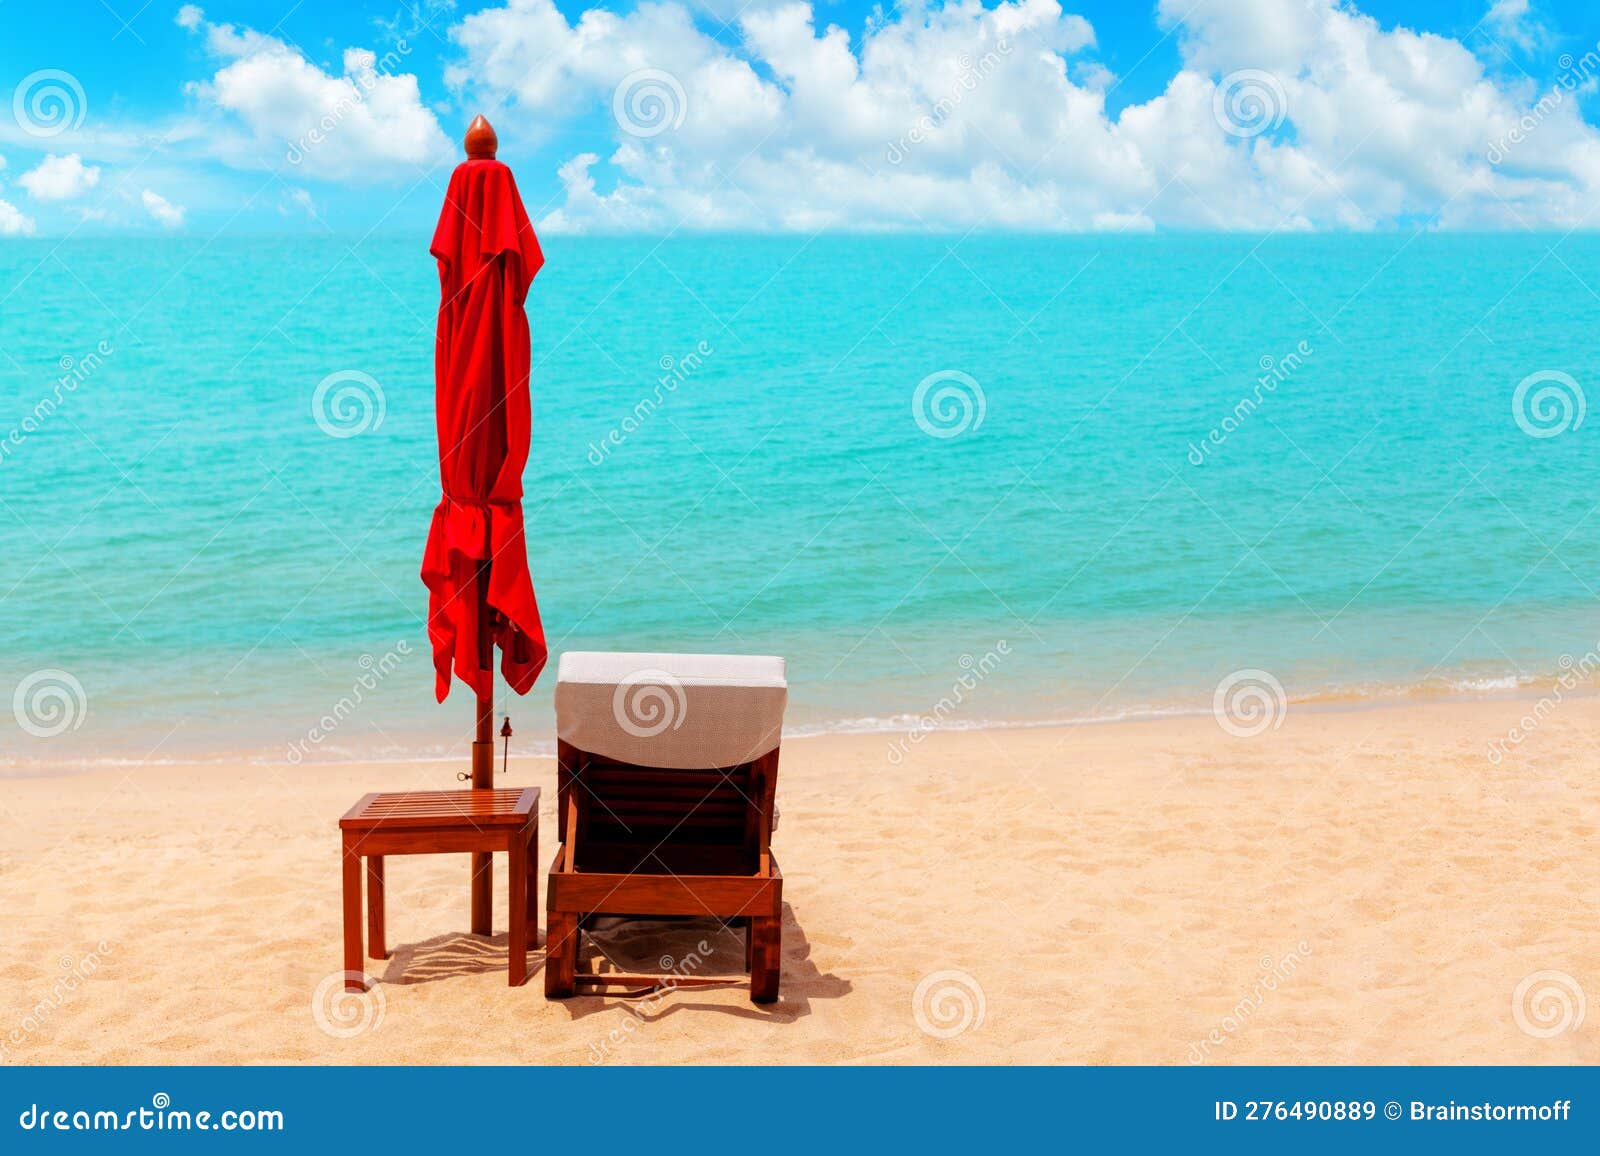 eerste een beetje kaart Rode Paraplu Destoel Zonneparasol Zonneschijn Lounge Sun Bed Tropical Sea  Strand Zomervakantie Stock Afbeelding - Image of vouwen, vrijheid: 276490889